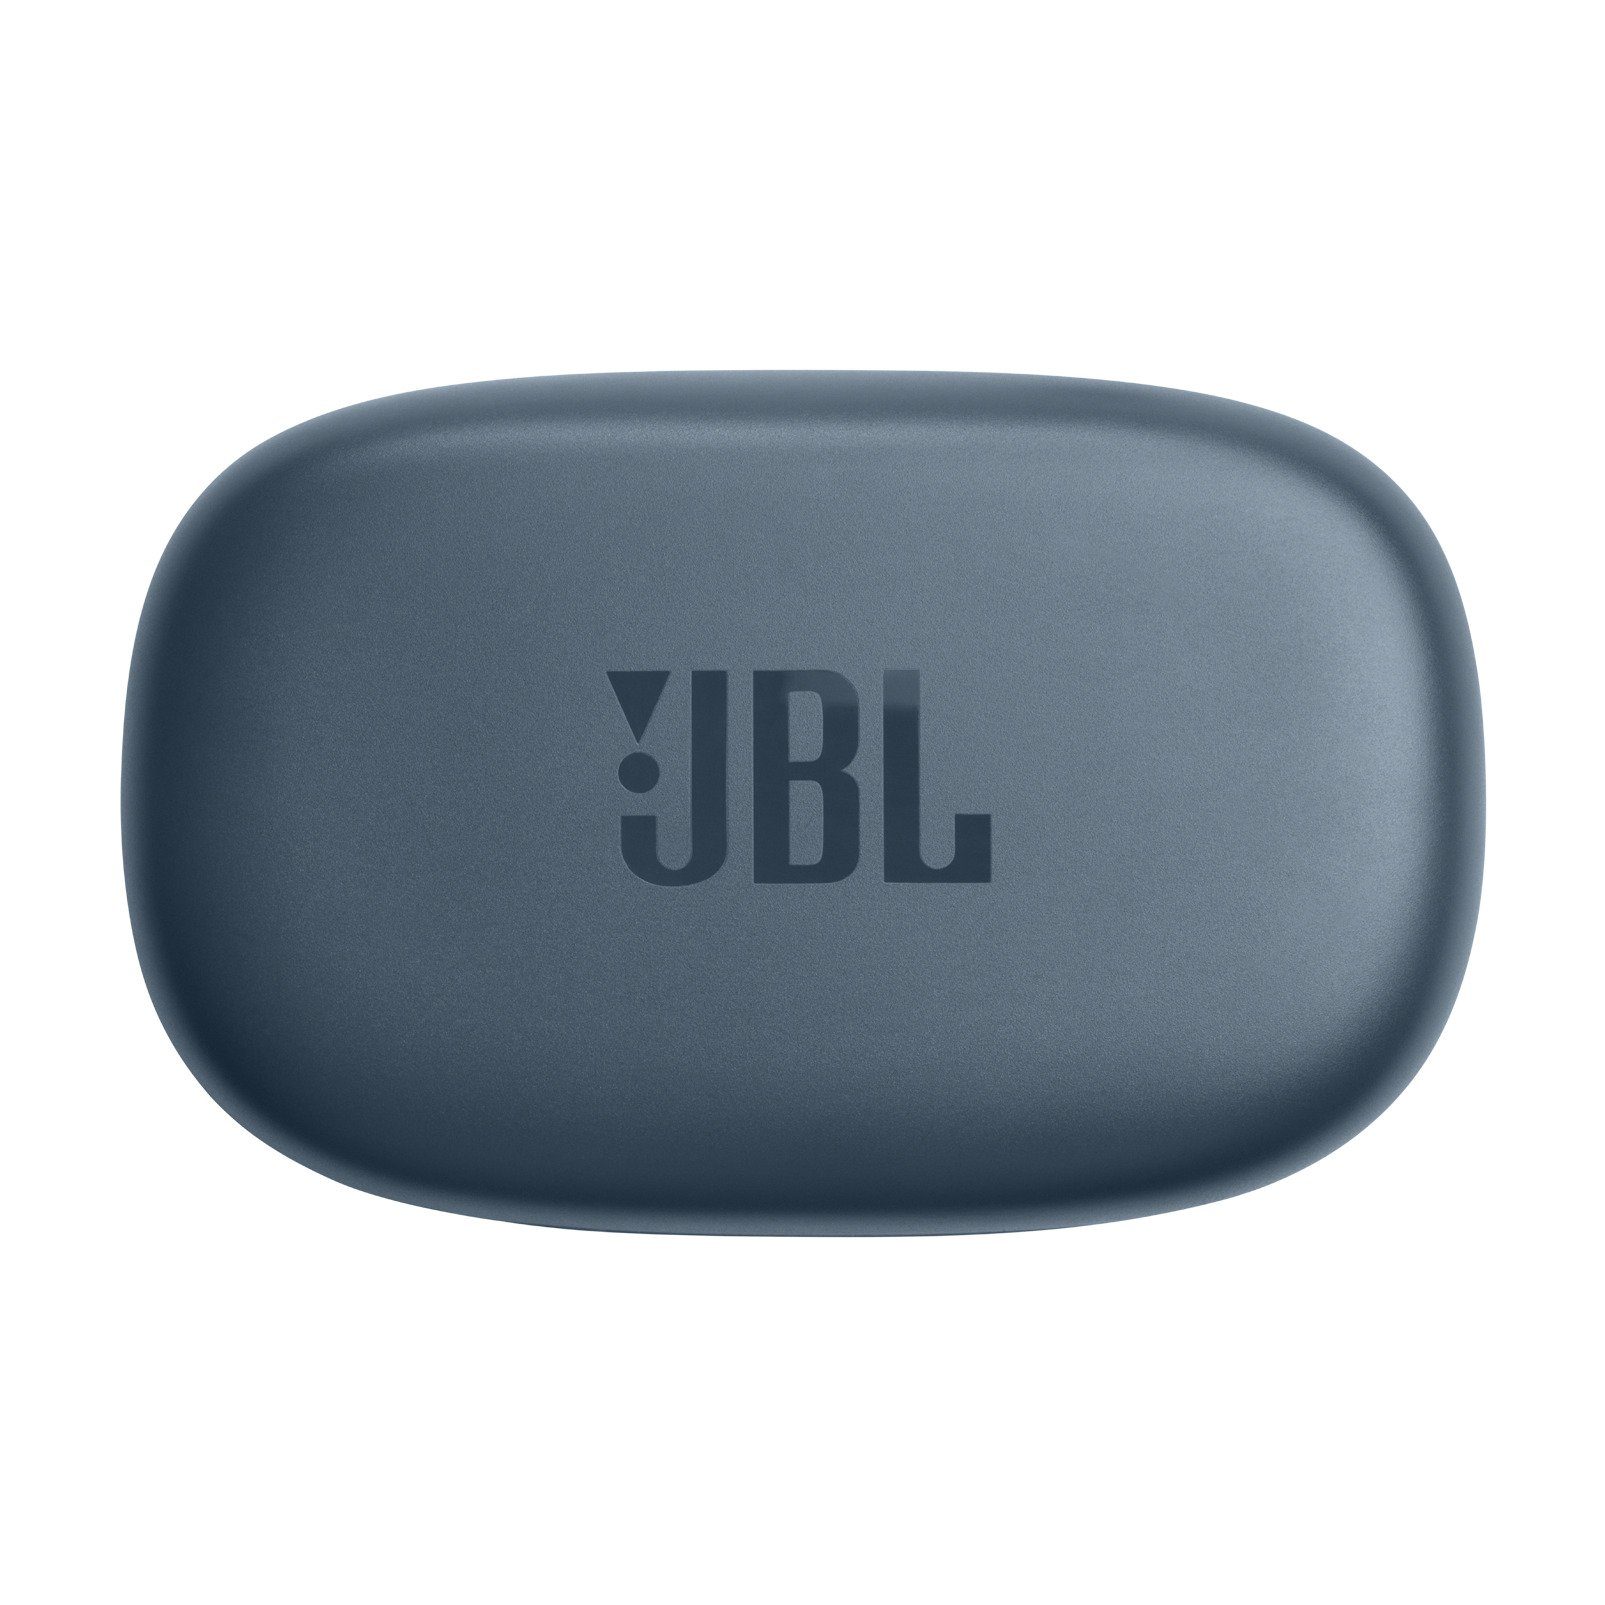 JBL Endurance PEAK wireless Sport - Blau 3 In-Ear-Kopfhörer Earbuds TW